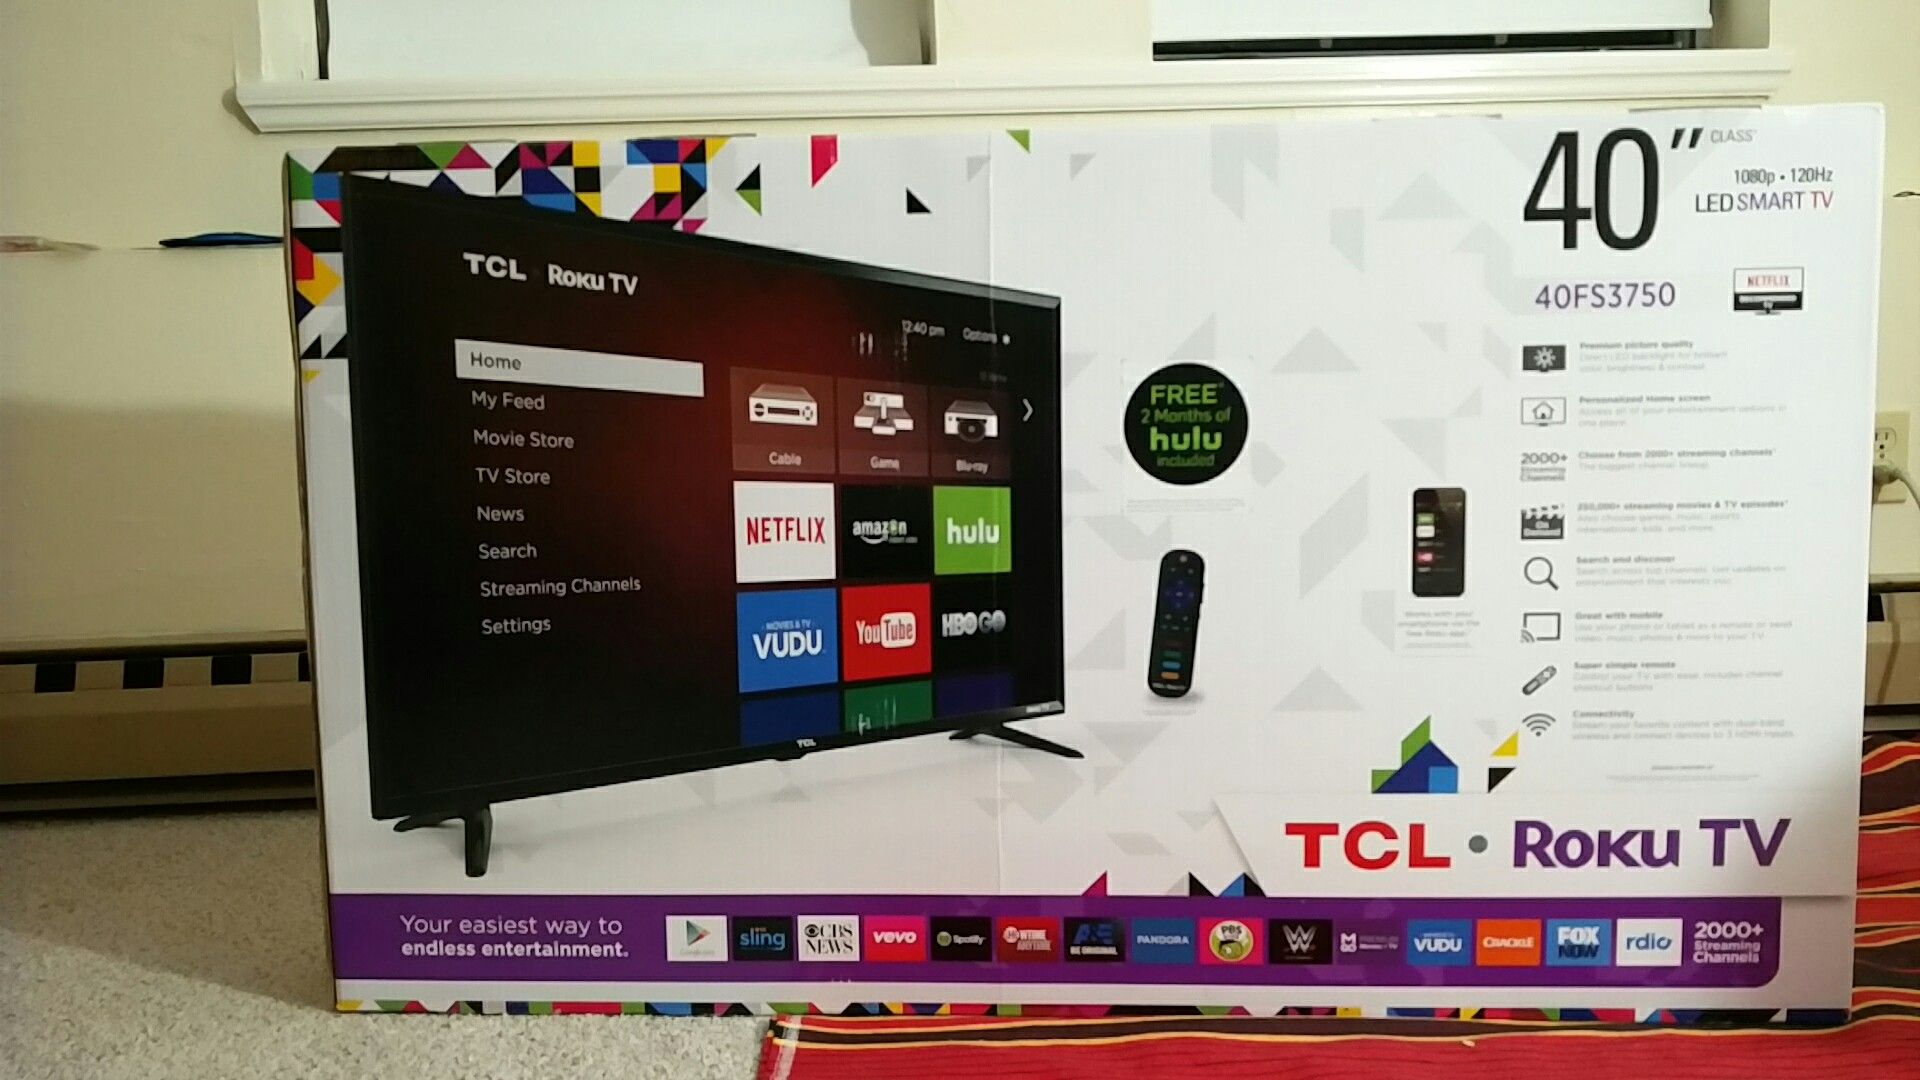 TCL Roku - LED Smart TV - 40'' 1080p .120hz